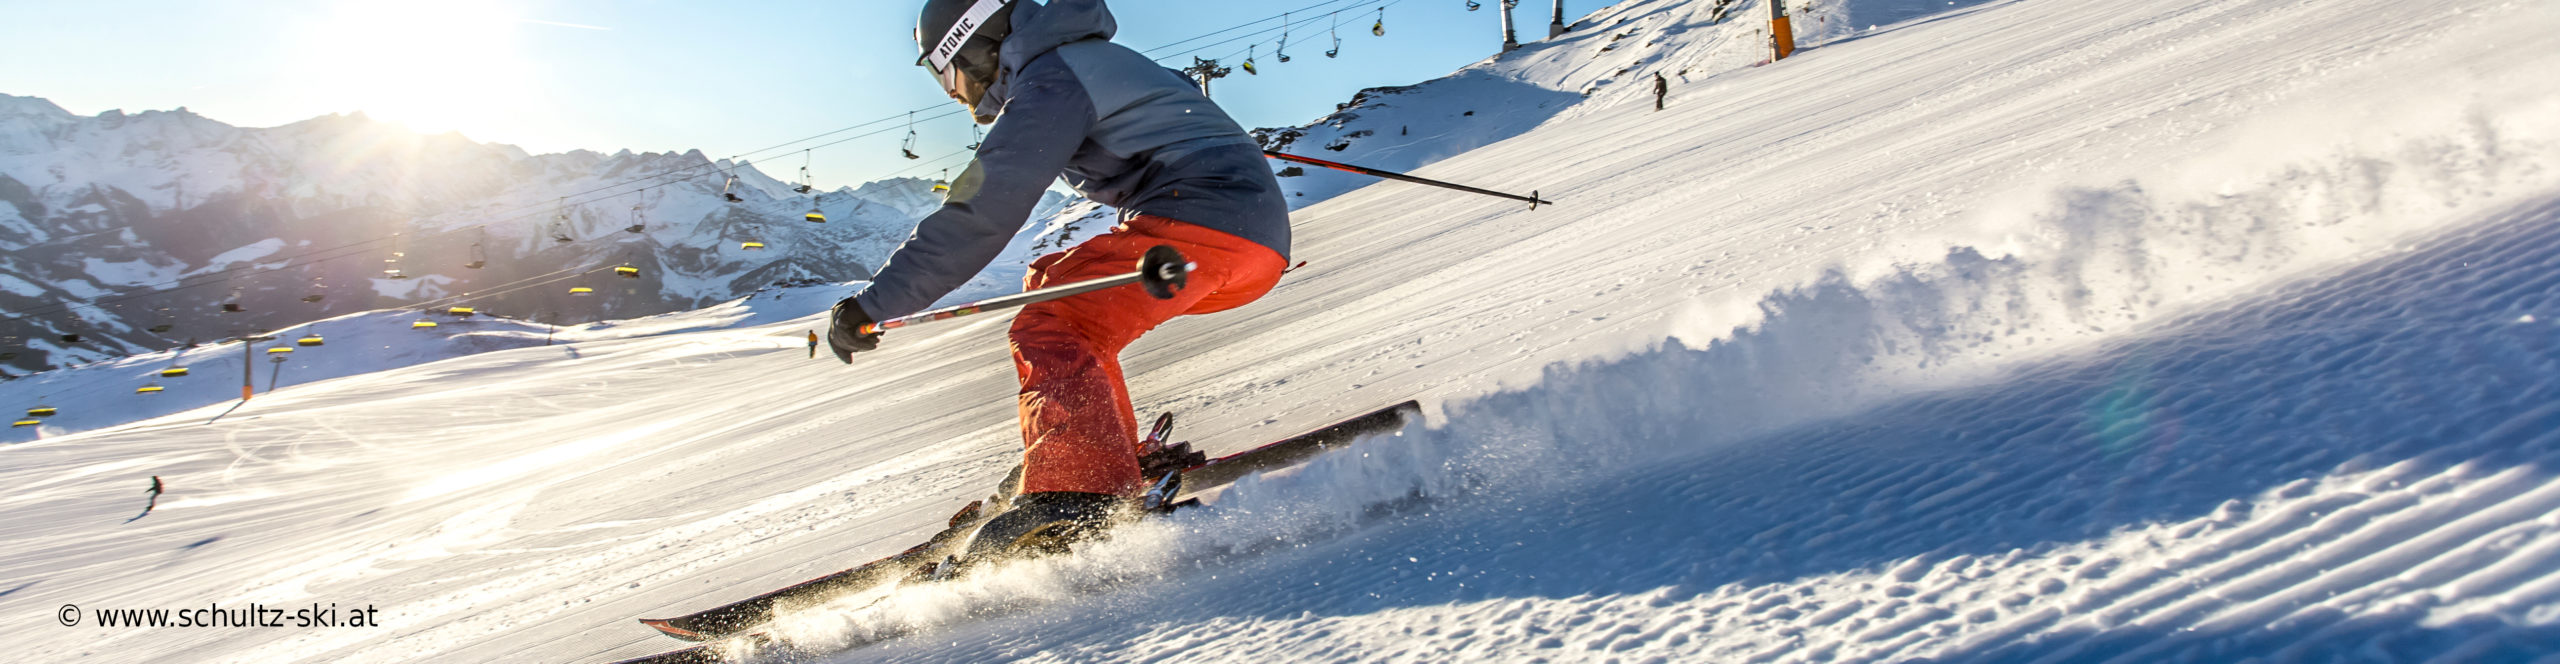 ZILLERTAL – verlängertes Skiwochenende mit 4 Skitagen – in den Weihnachtsferien – Hotel in Strass – ab Mittwoch früh 